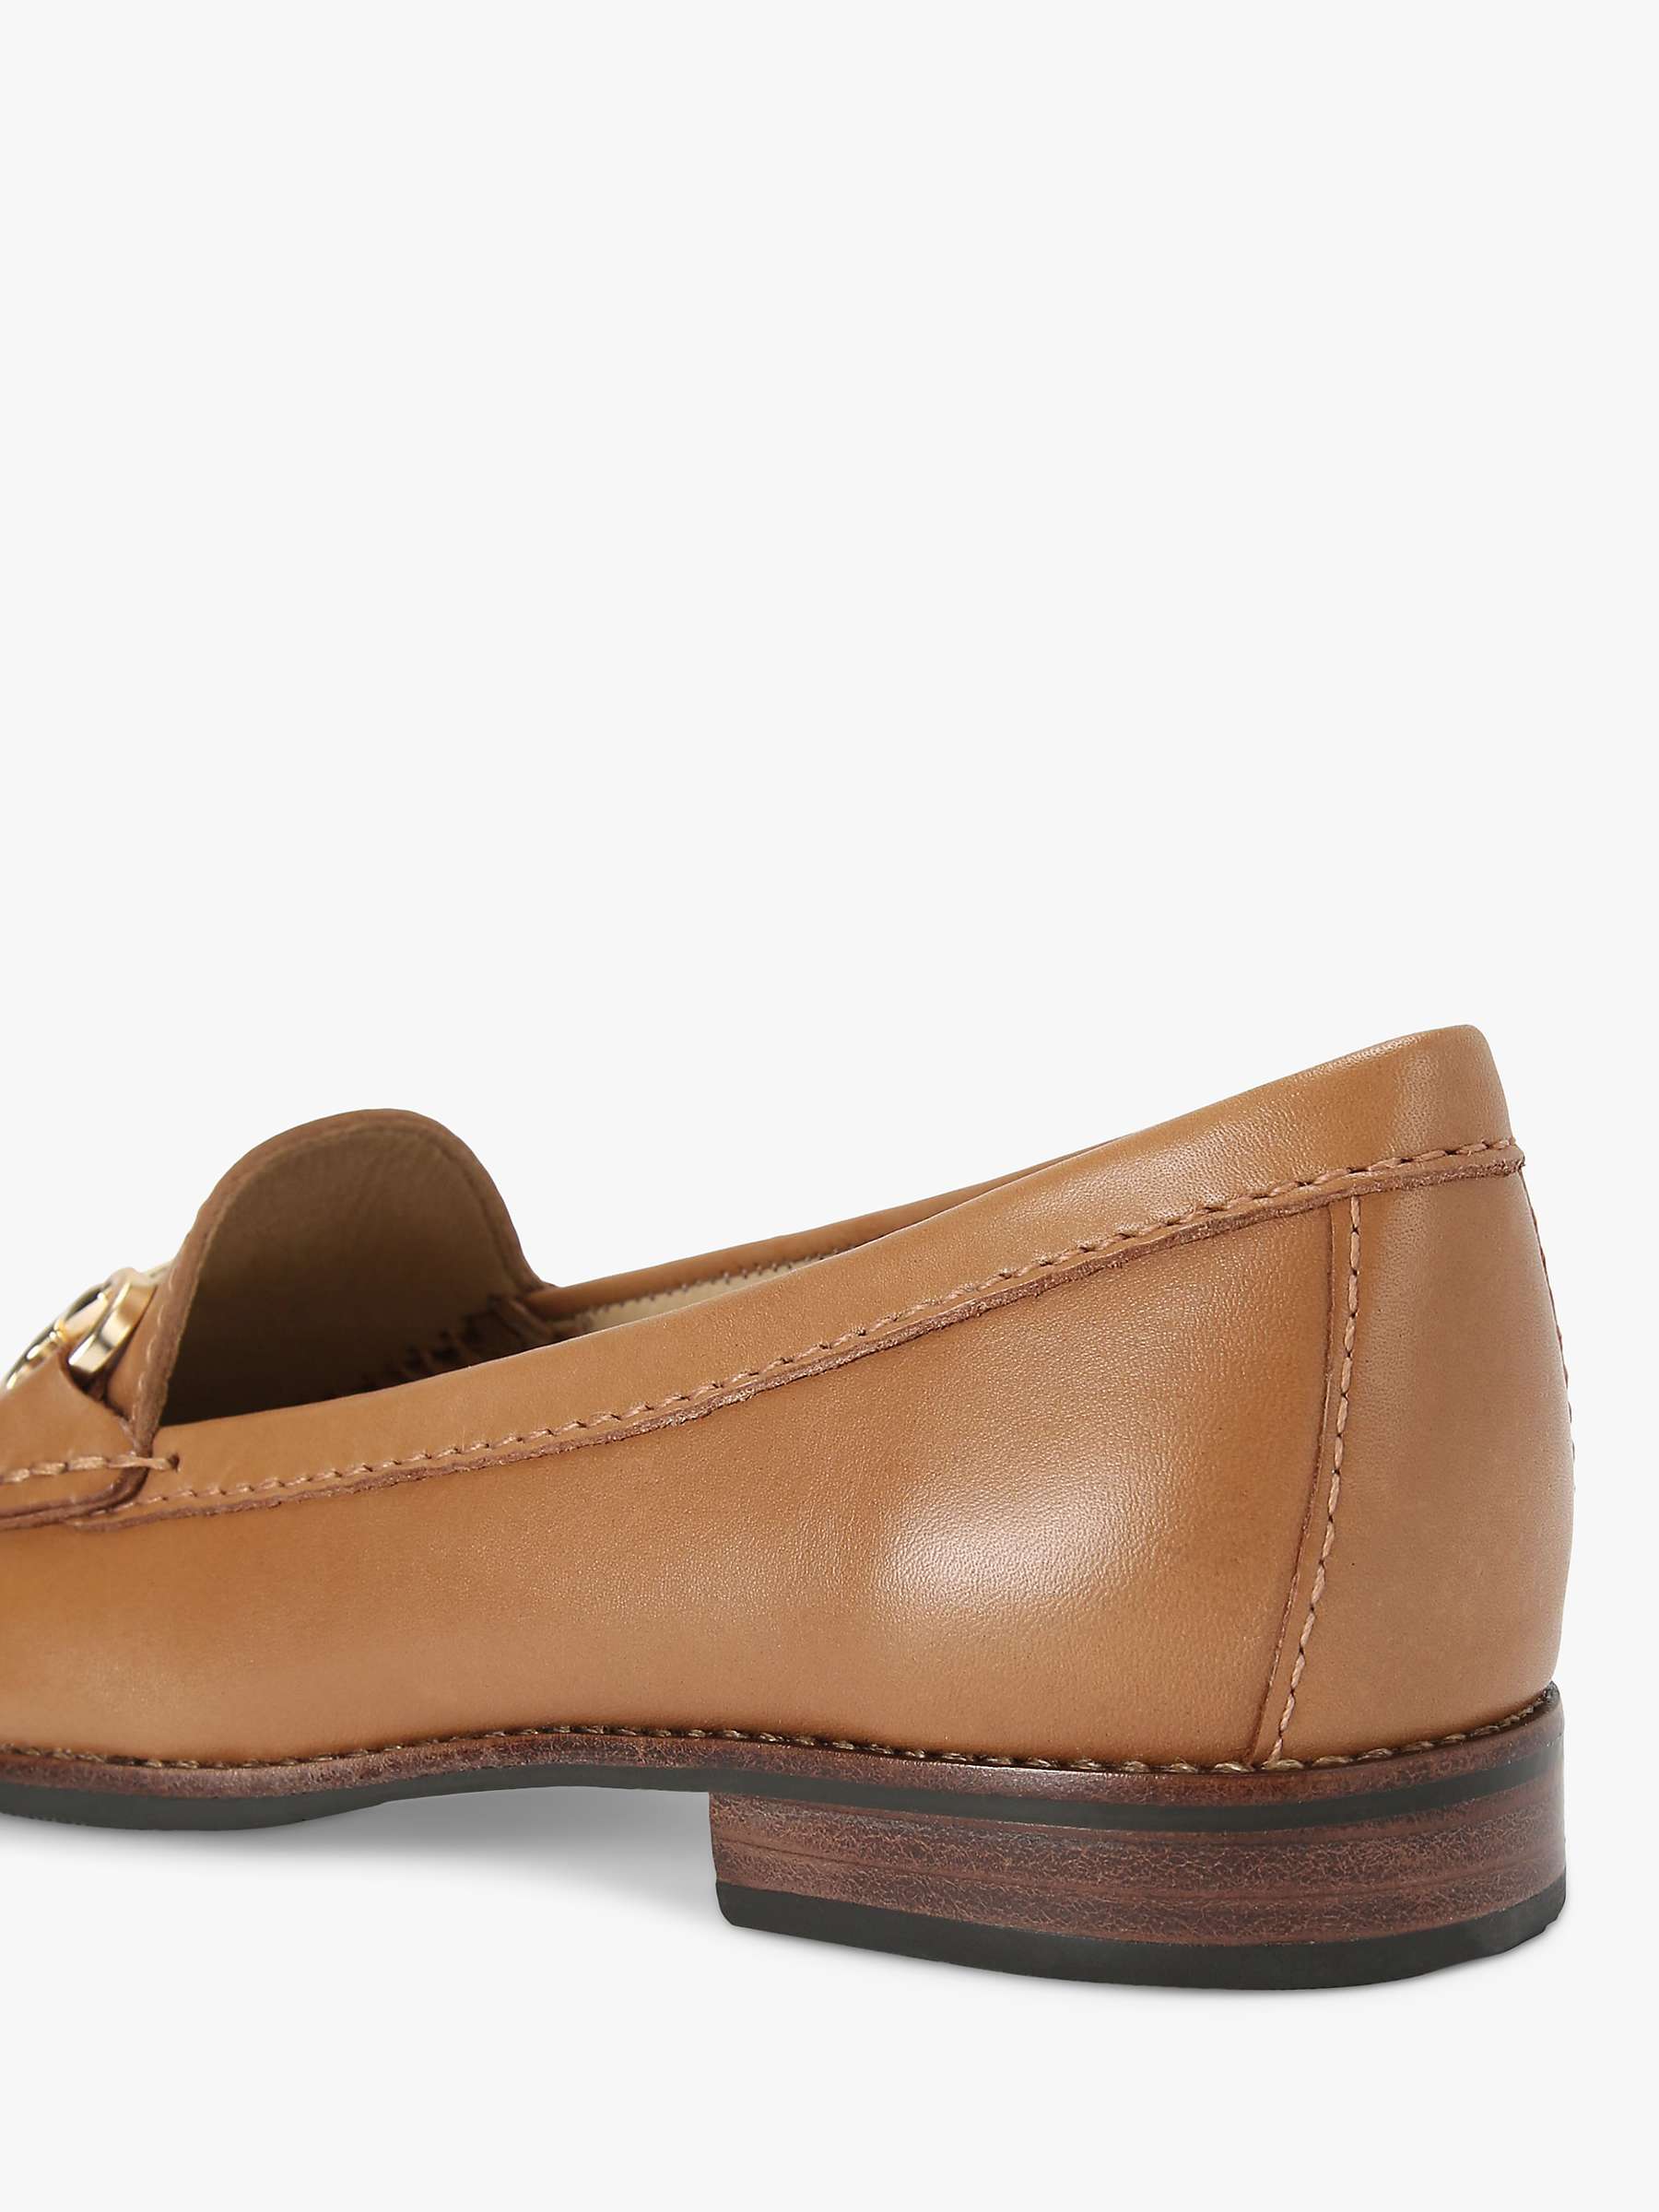 Buy KG Kurt Geiger Matilda Leather Slip On Loafers, Brown Tan Online at johnlewis.com